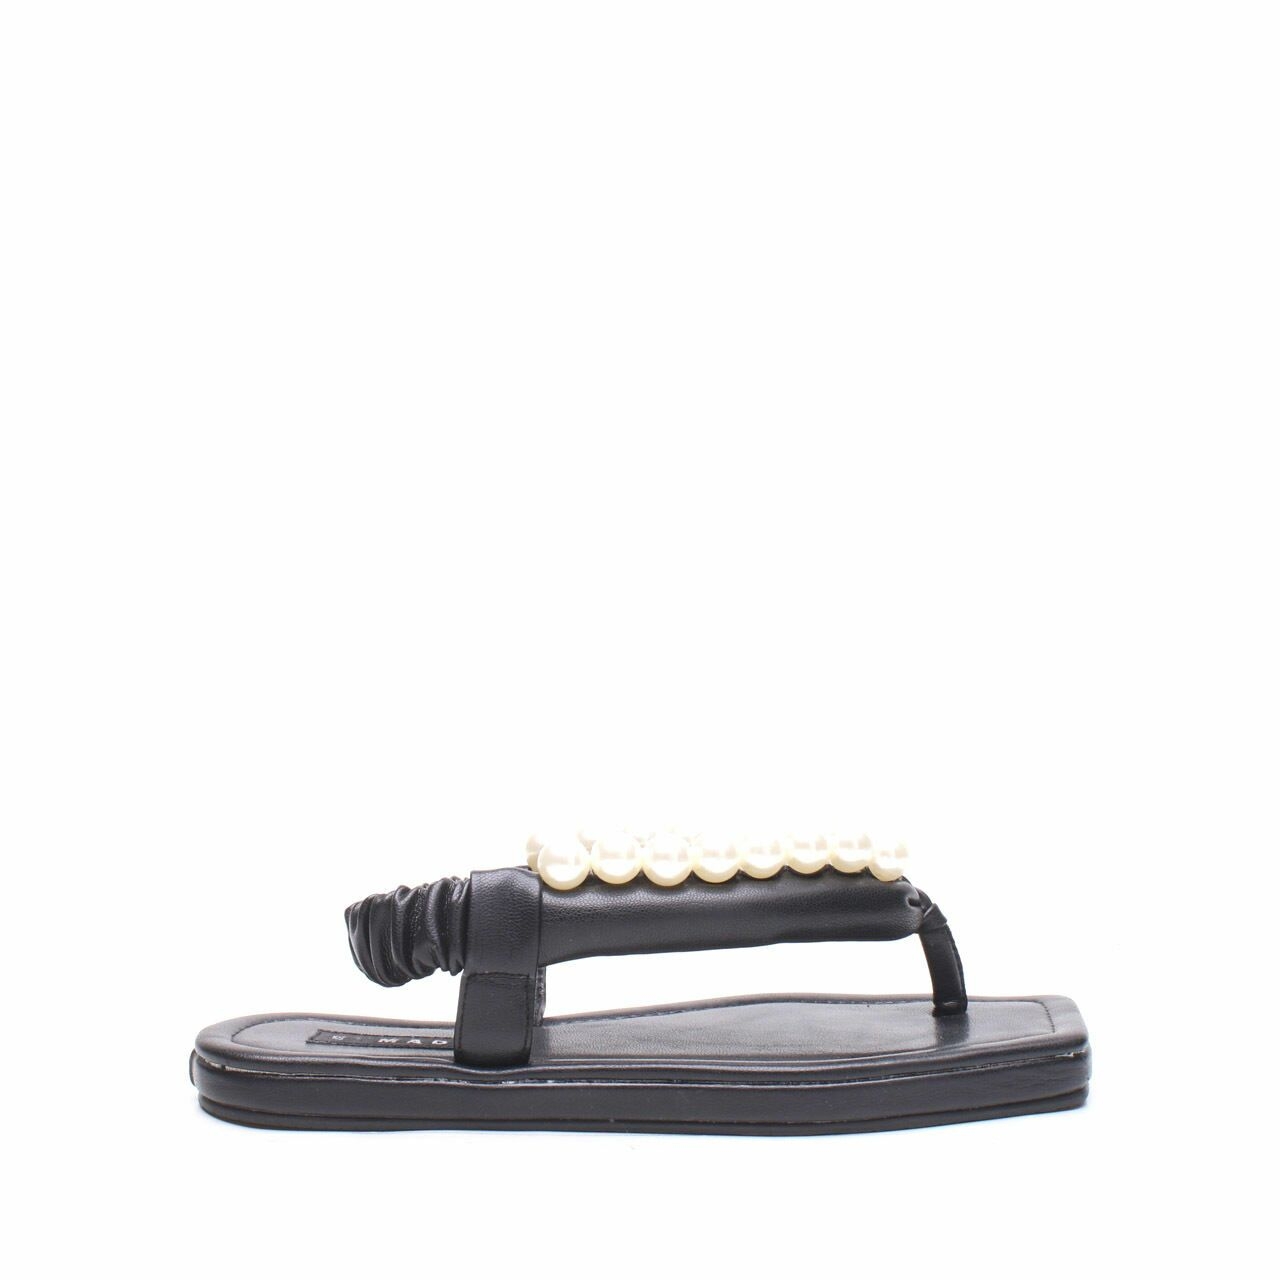 Mader Michelin Boba Black Sandals